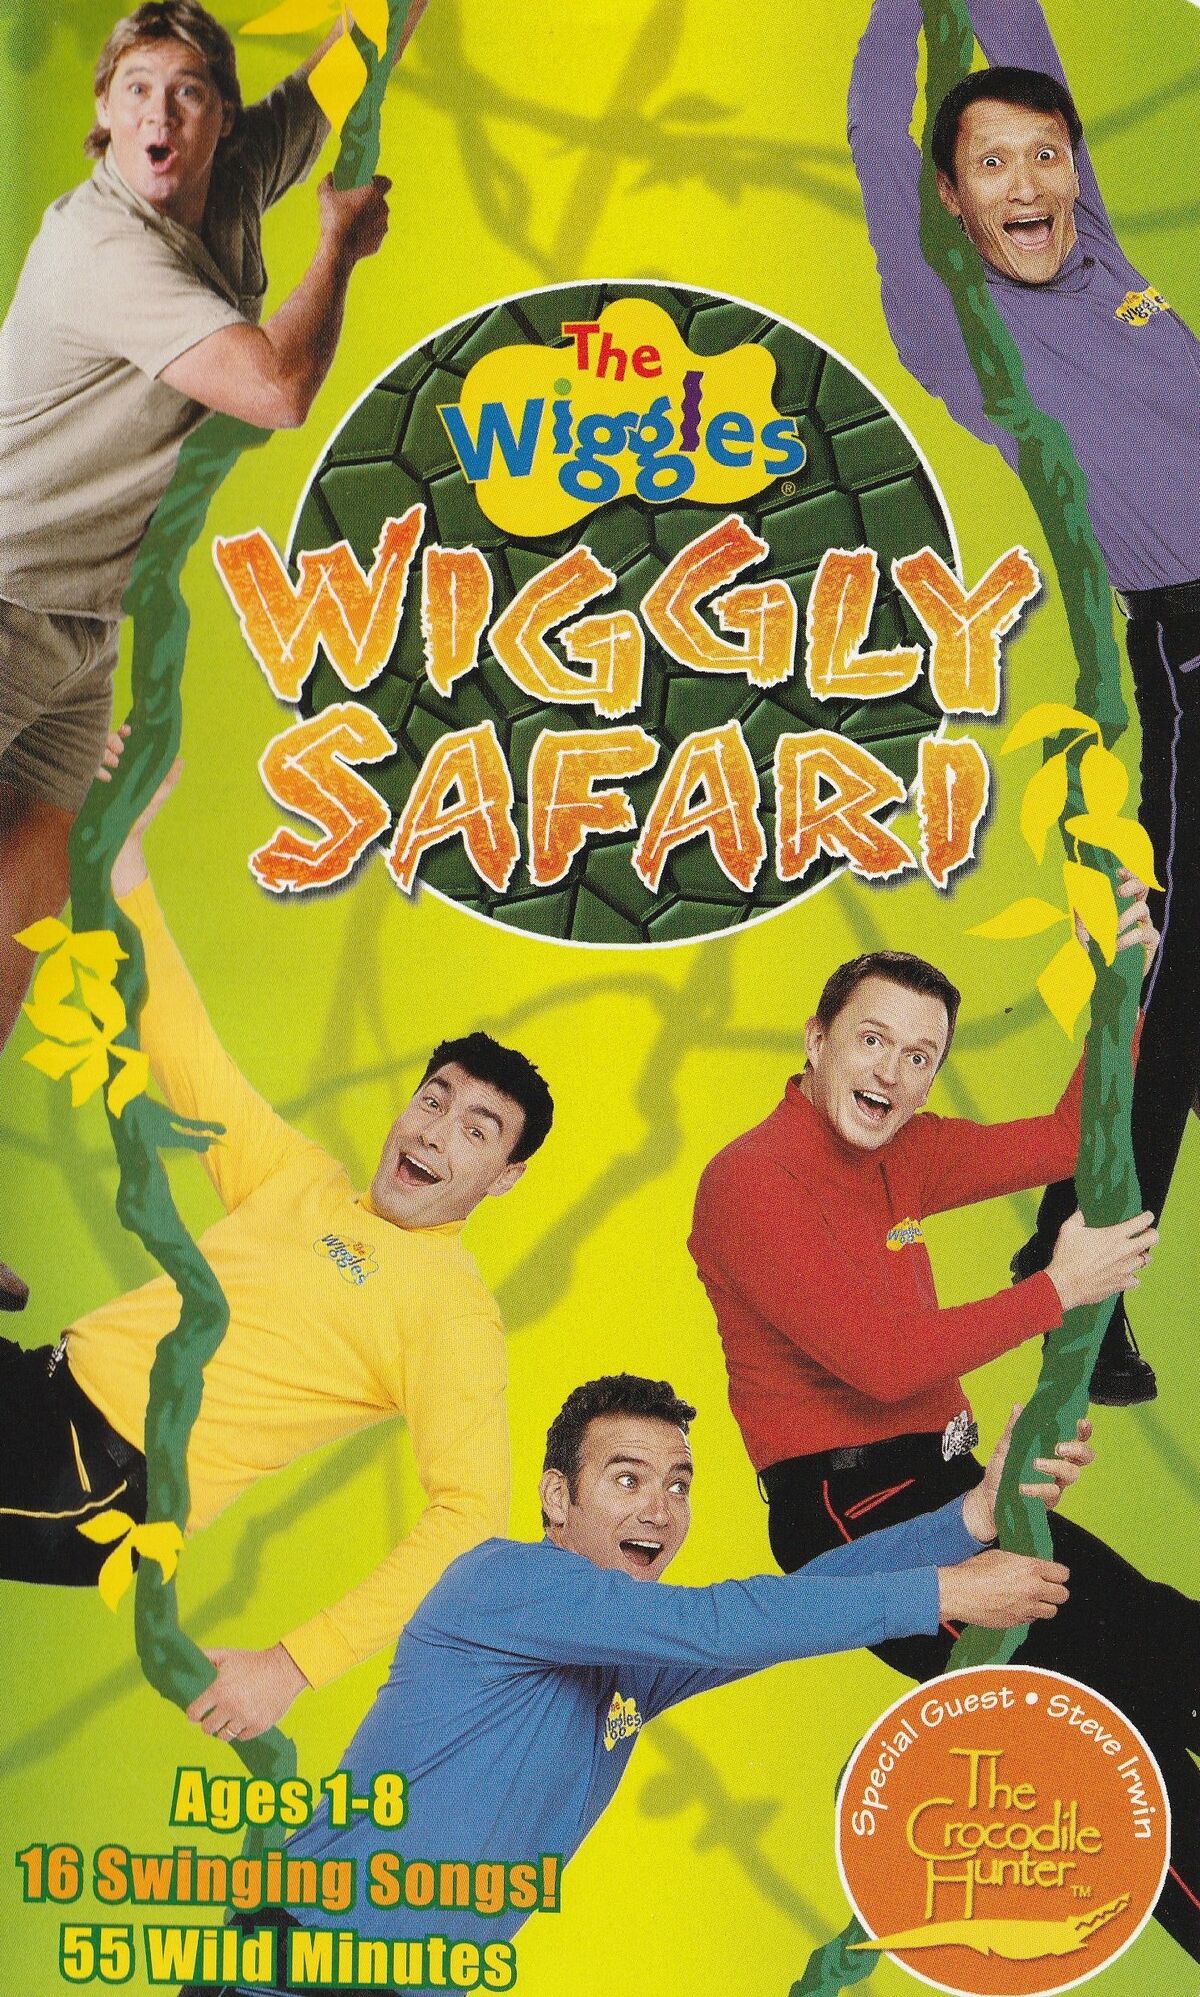 Wiggly Safari Video Wiggles Fanon Wiki Fandom